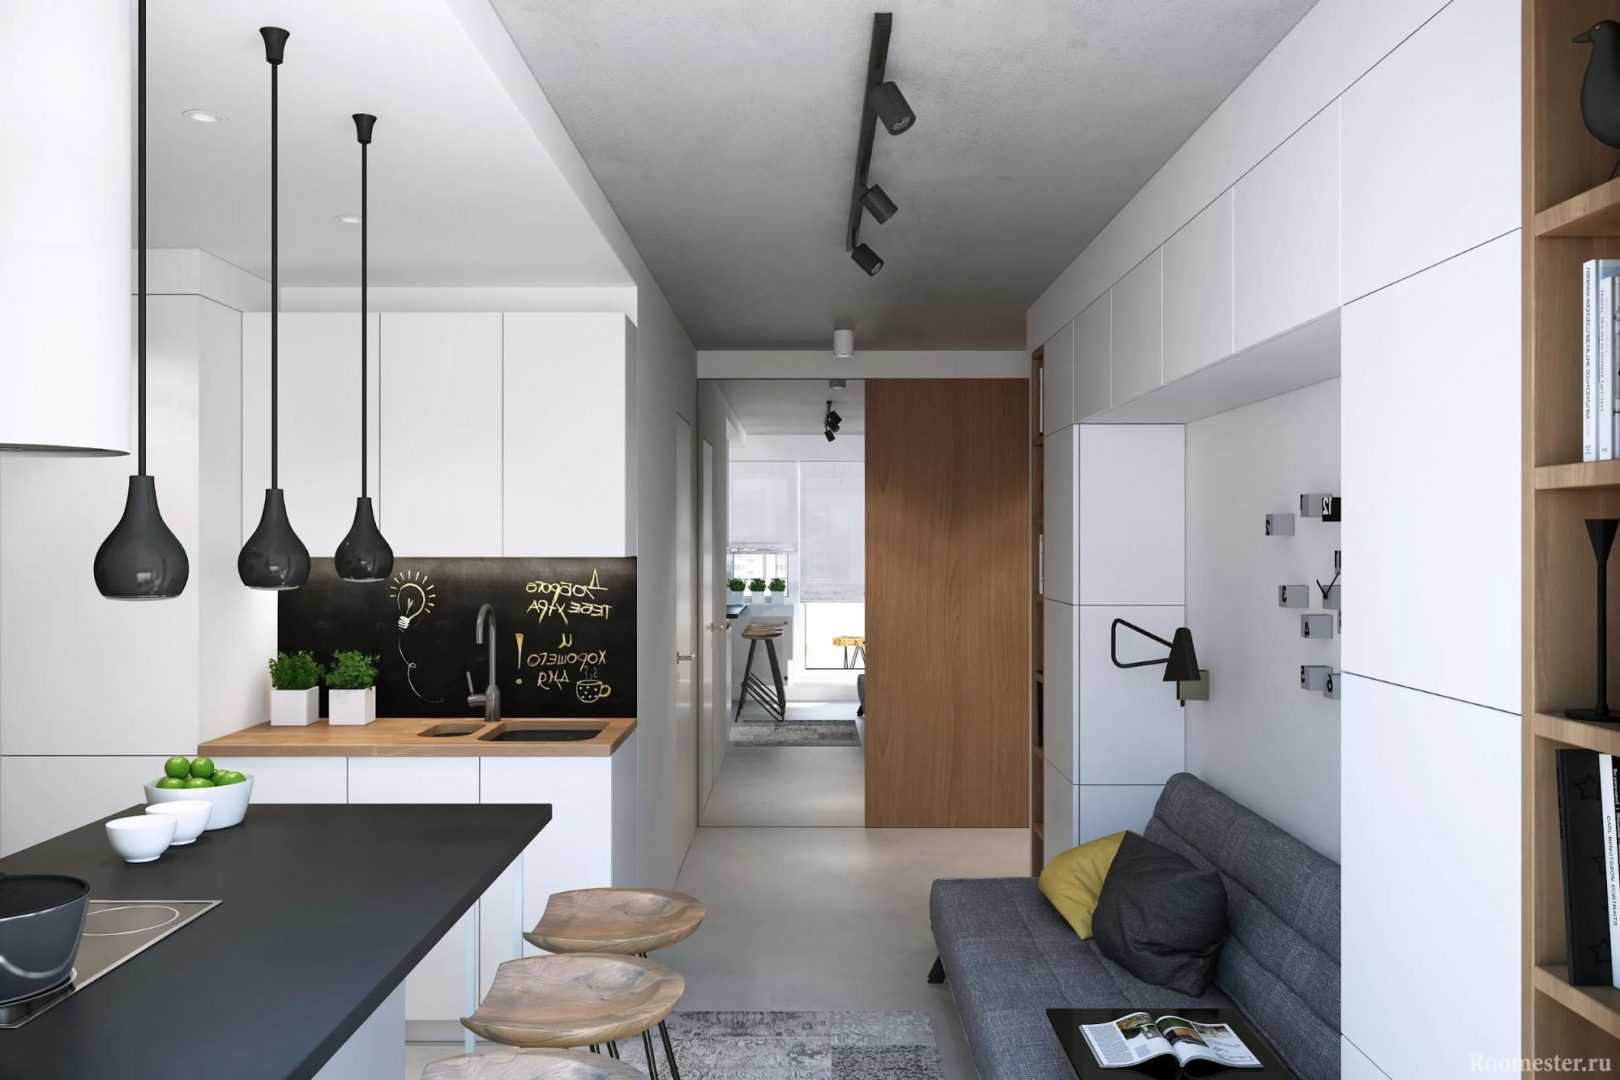 Дизайн квартиры-студии 24 кв. м +50 вариантов интерьера